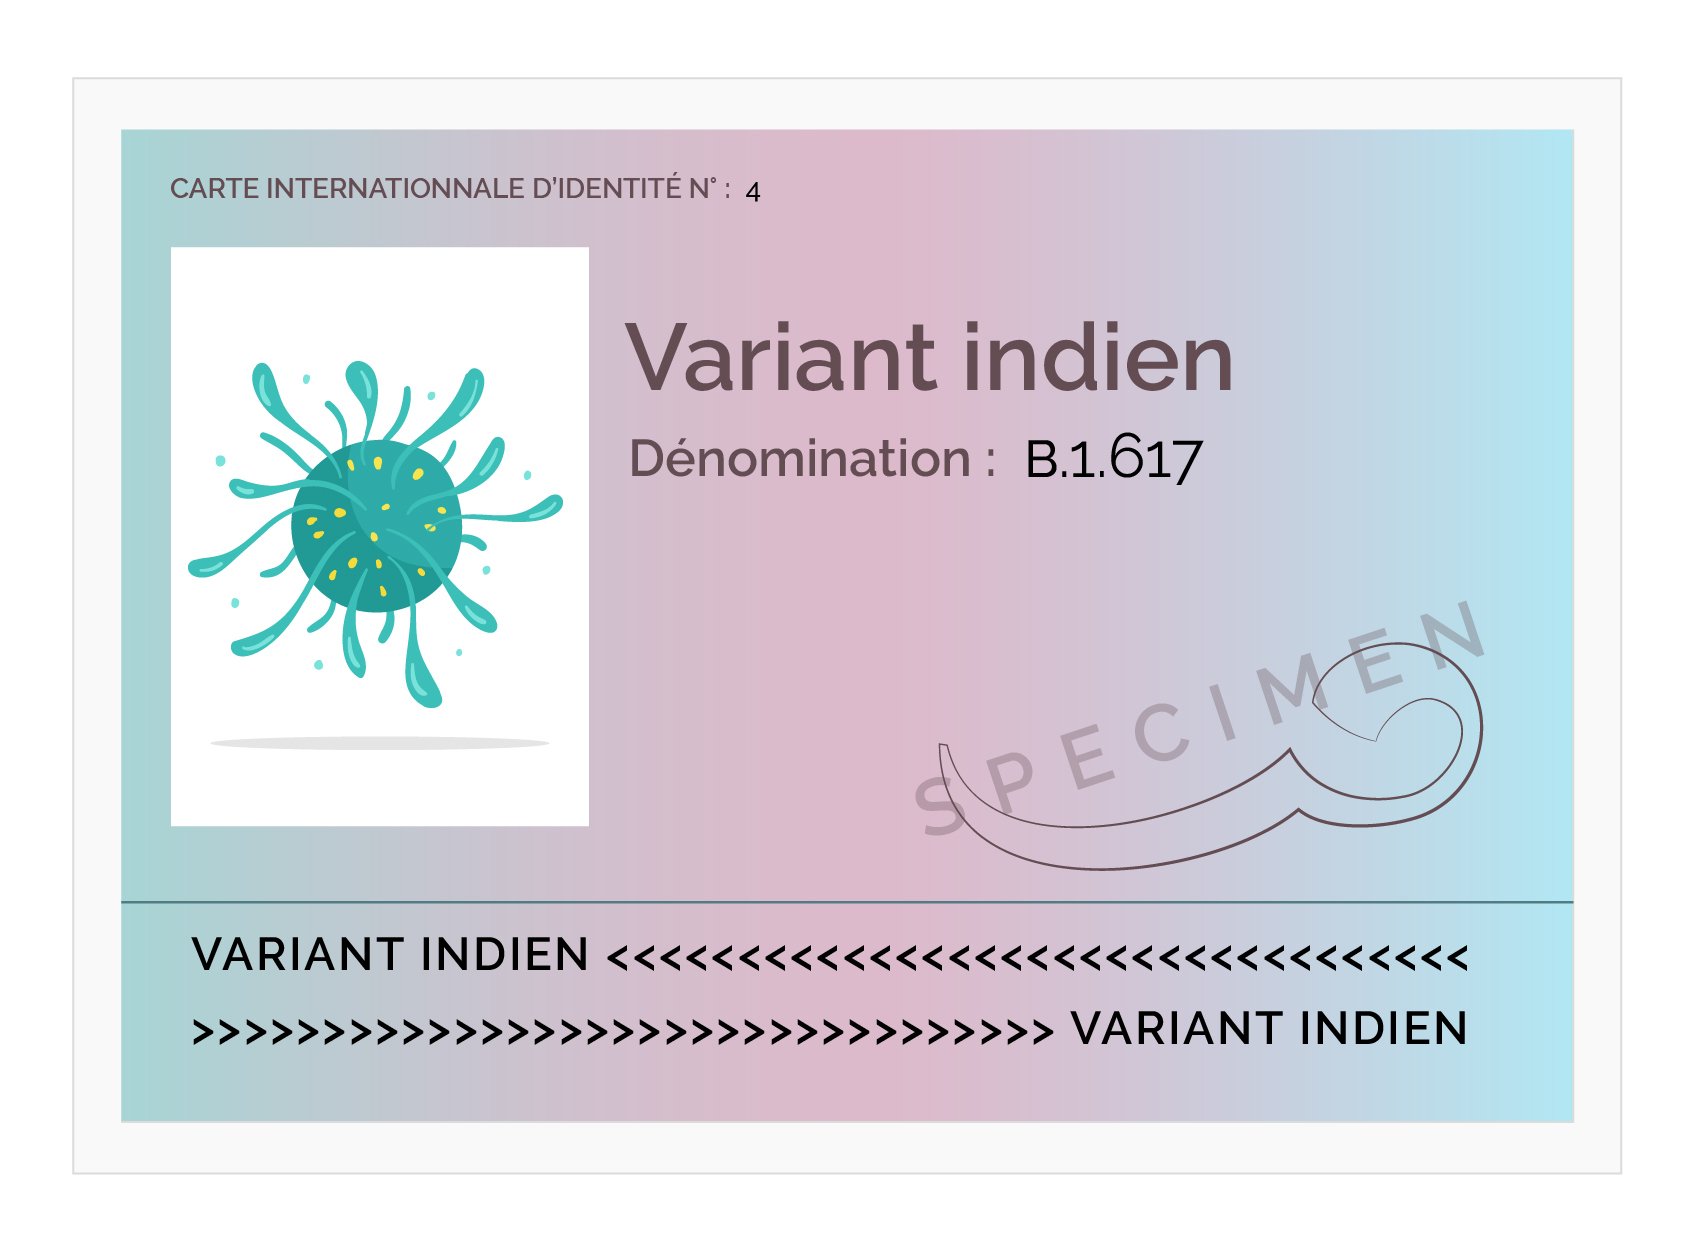 carte d identite variant V2_variant indien (1)